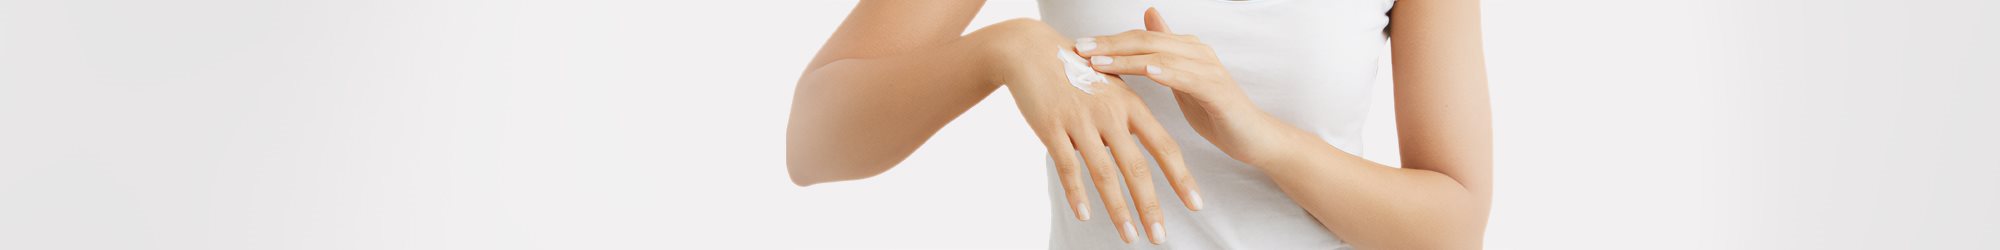 Vue rapprochée d'un mannequin féminin appliquant de la crème Eucerin Eczema Relief sur sa main droite, sur fond blanc.